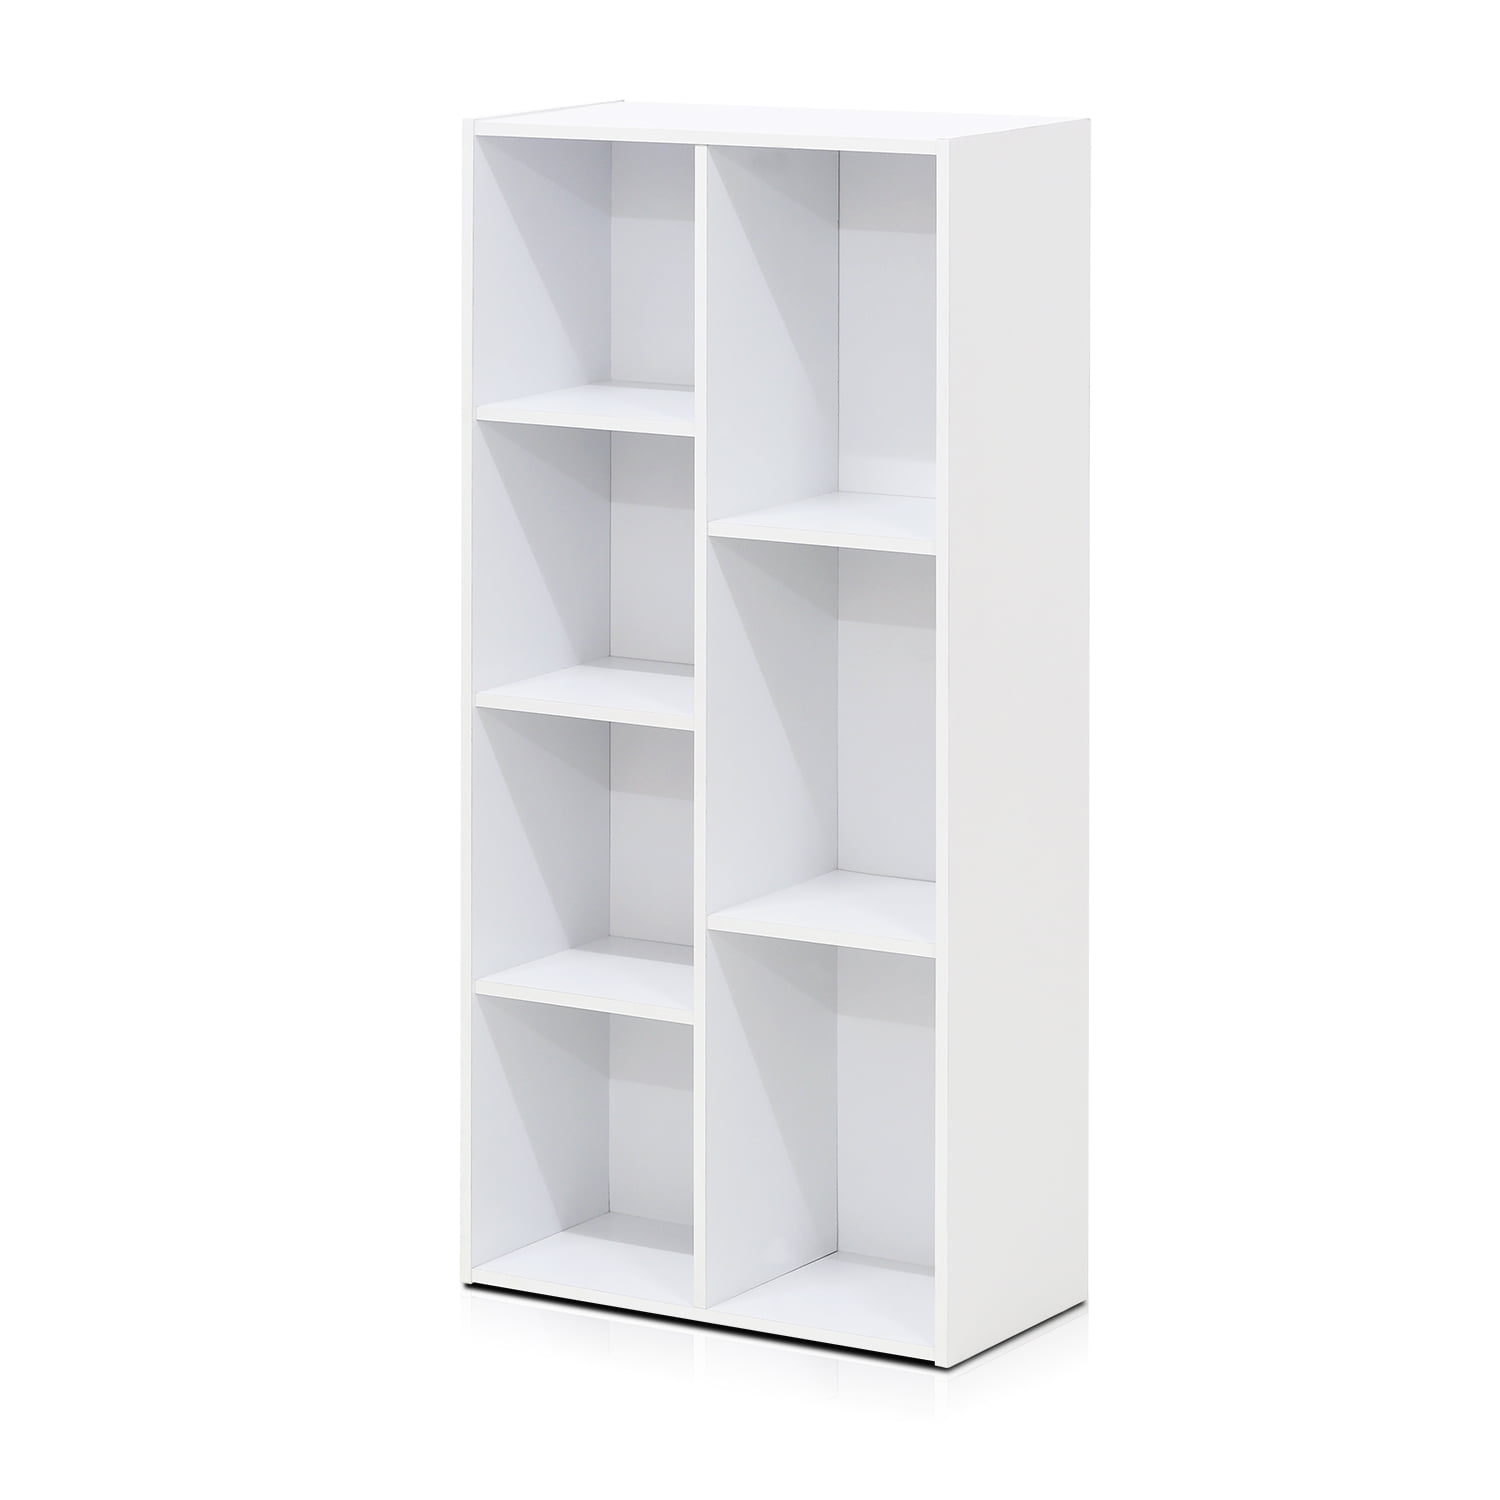 Furinno 11048WH 7-Cube Reversible Open Shelf Bookcase, White - 2